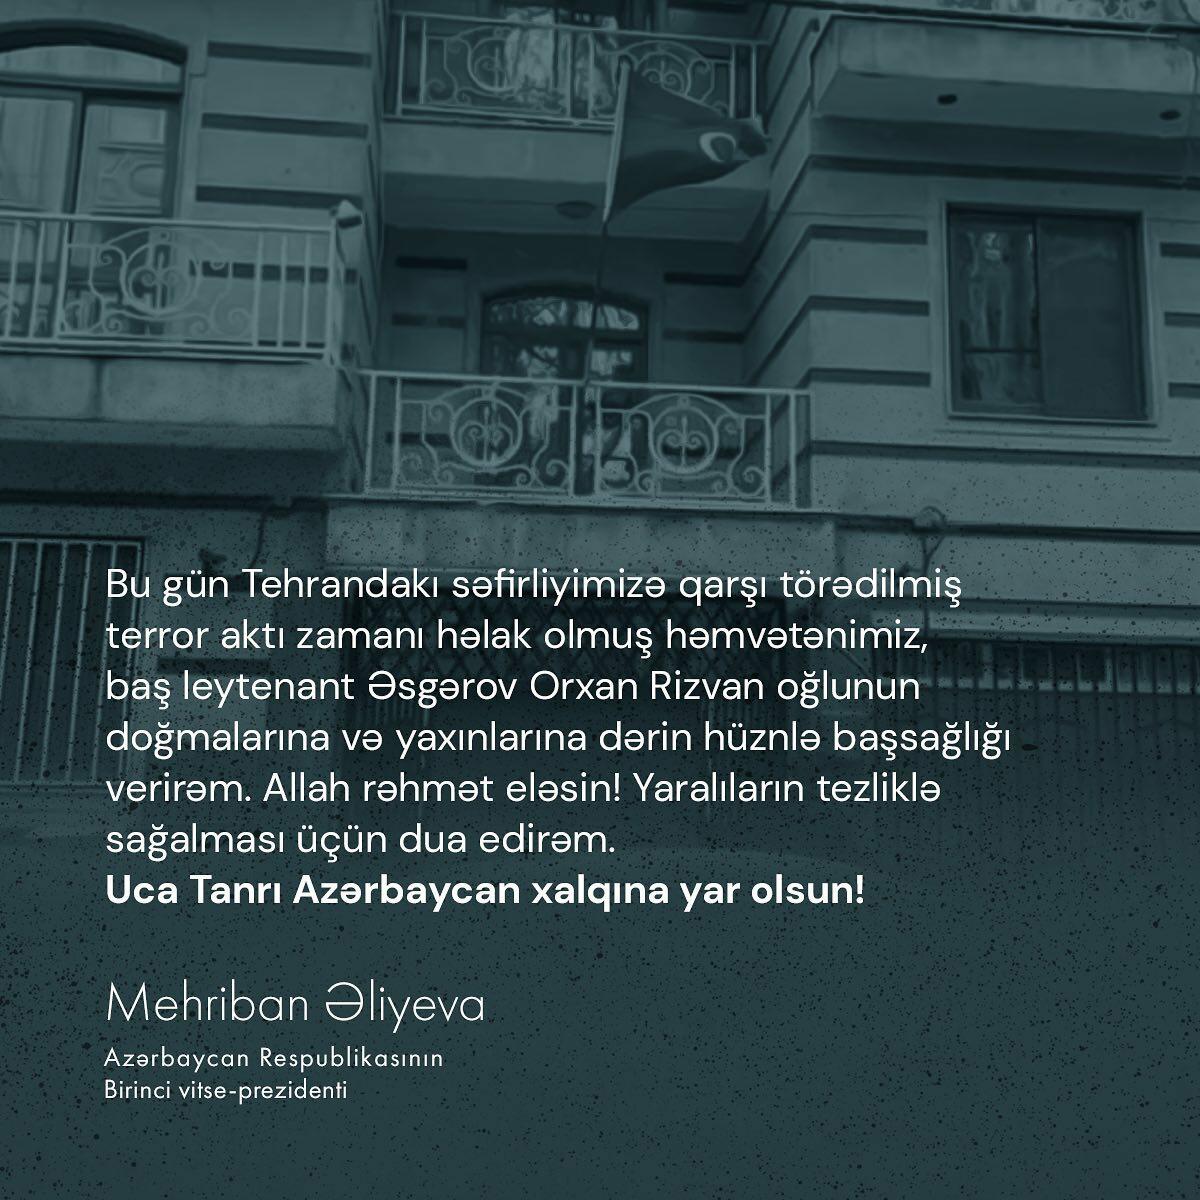 Первый вице-президент Мехрибан Алиева выразила соболезнования родным и близким Орхана Аскерова, погибшего во время теракта против посольства Азербайджана в Тегеране